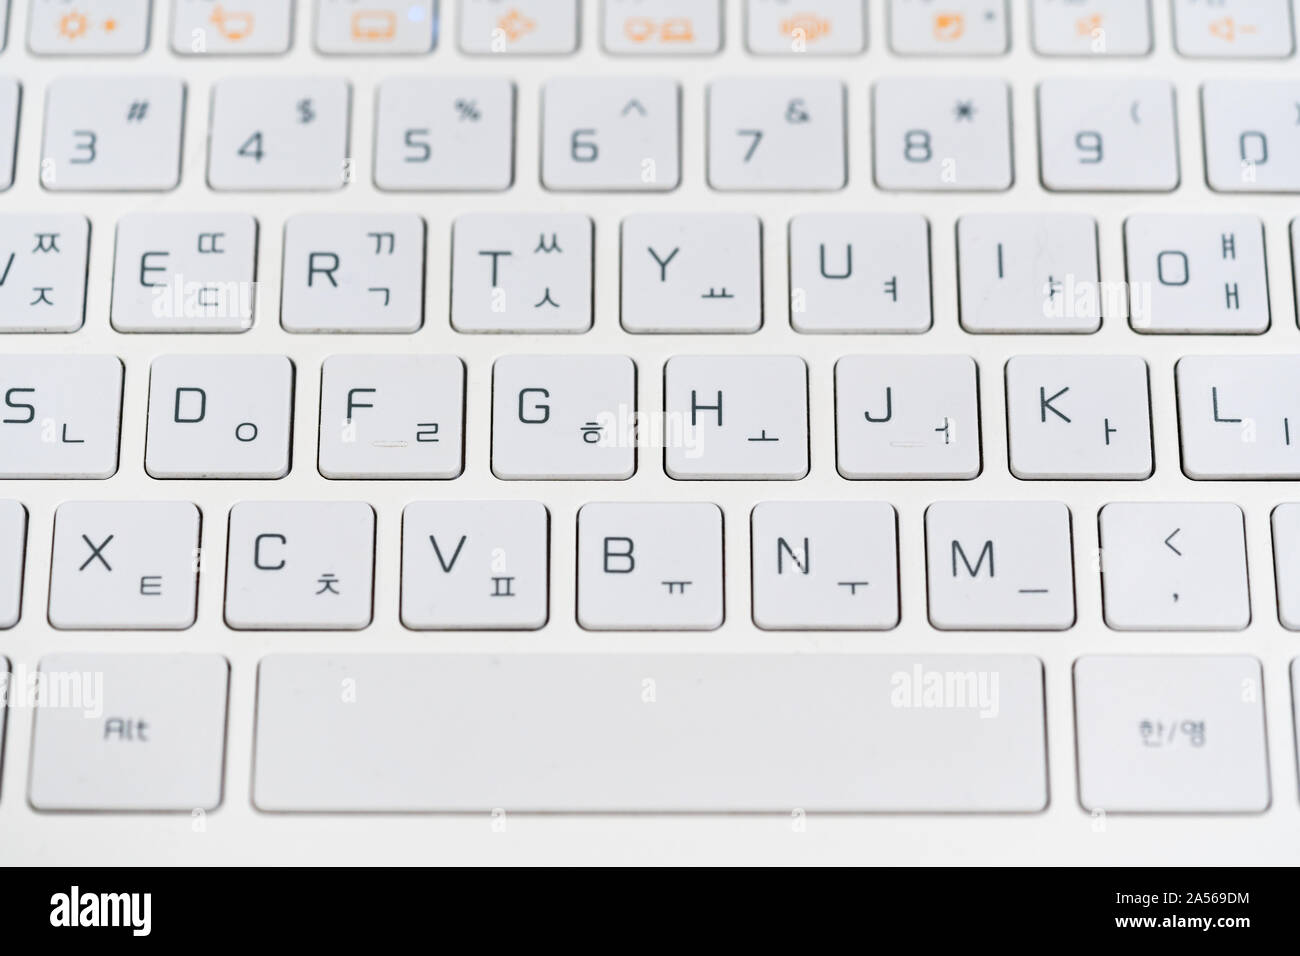 Vue rapprochée du coréen et anglais portable Windows clavier clavier,  bouton alphabet blanc, fabriqué par LG Electronics Inc. est le choix de la  Corée du Sud Photo Stock - Alamy